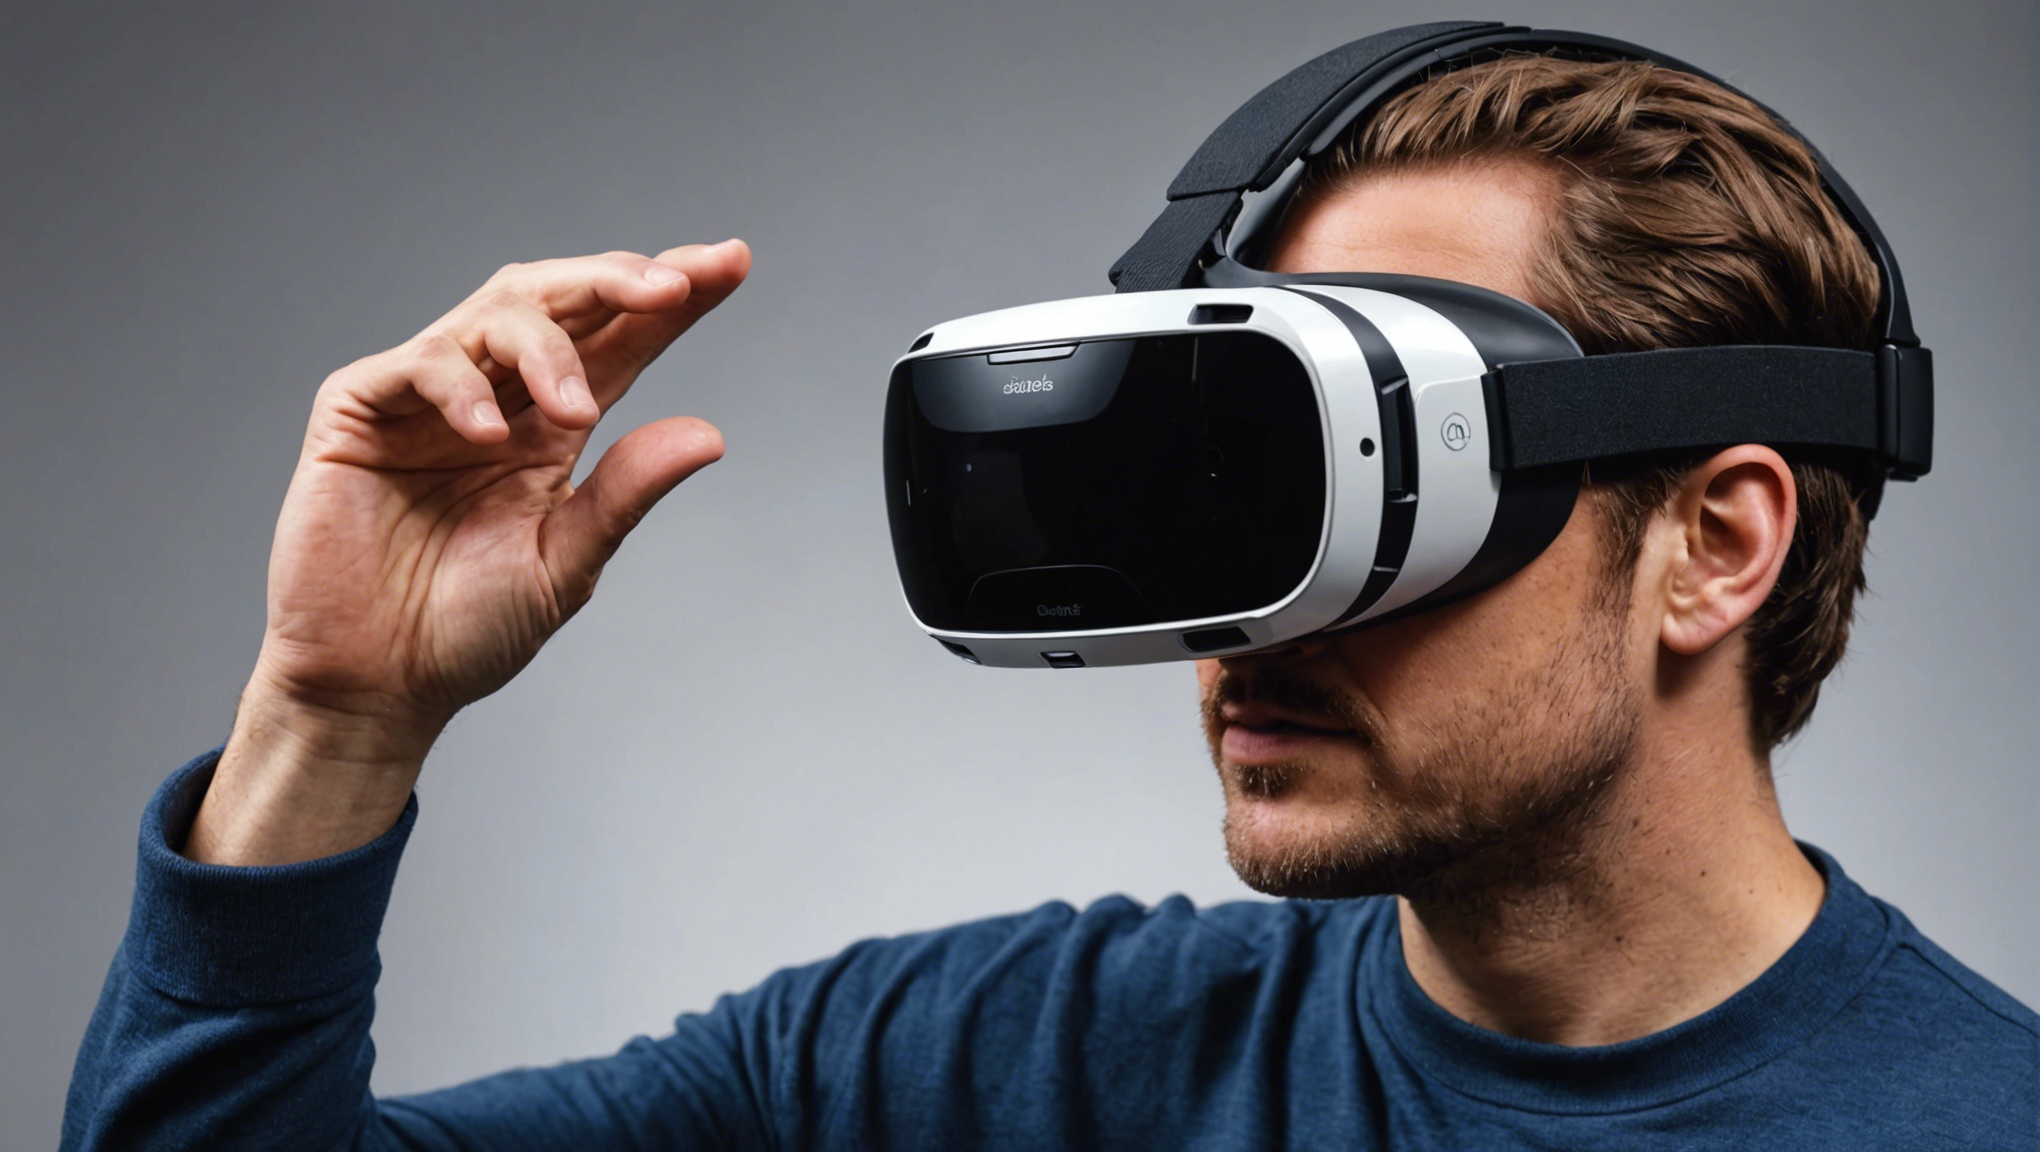 découvrez l'évolution de la réalité virtuelle, ses perspectives incroyables et sa place dans notre société. révolution ou simple gadget ? trouvez la réponse ici !